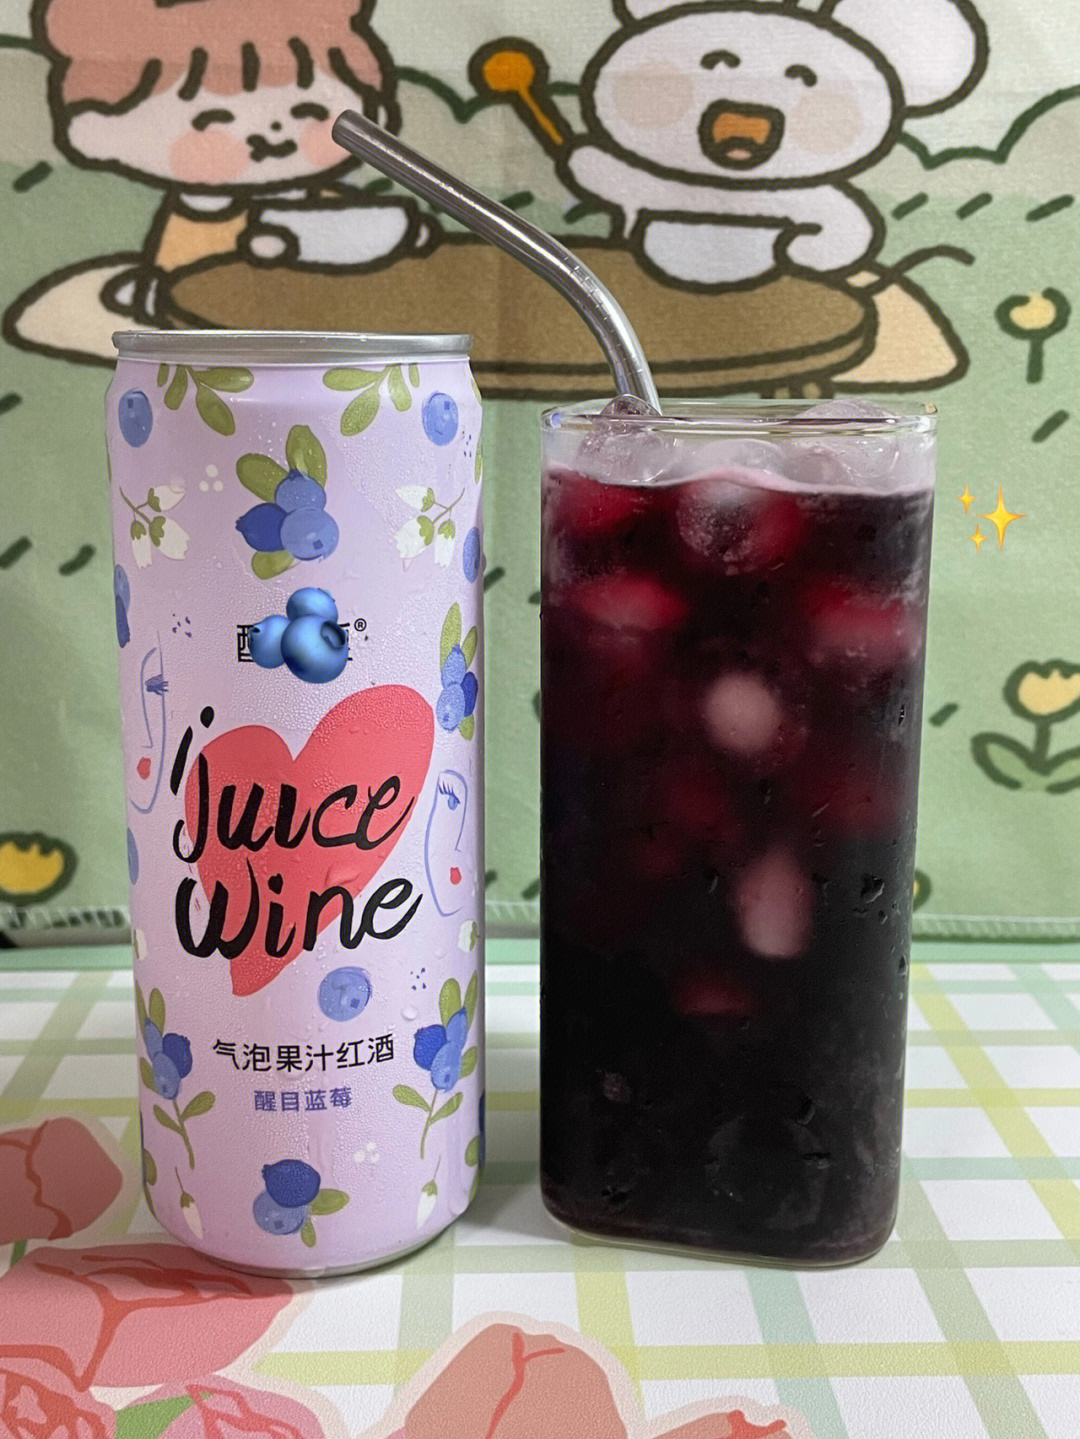 蓝莓气泡果汁红酒,这几个东西加在一起根本就不可能难喝啊!